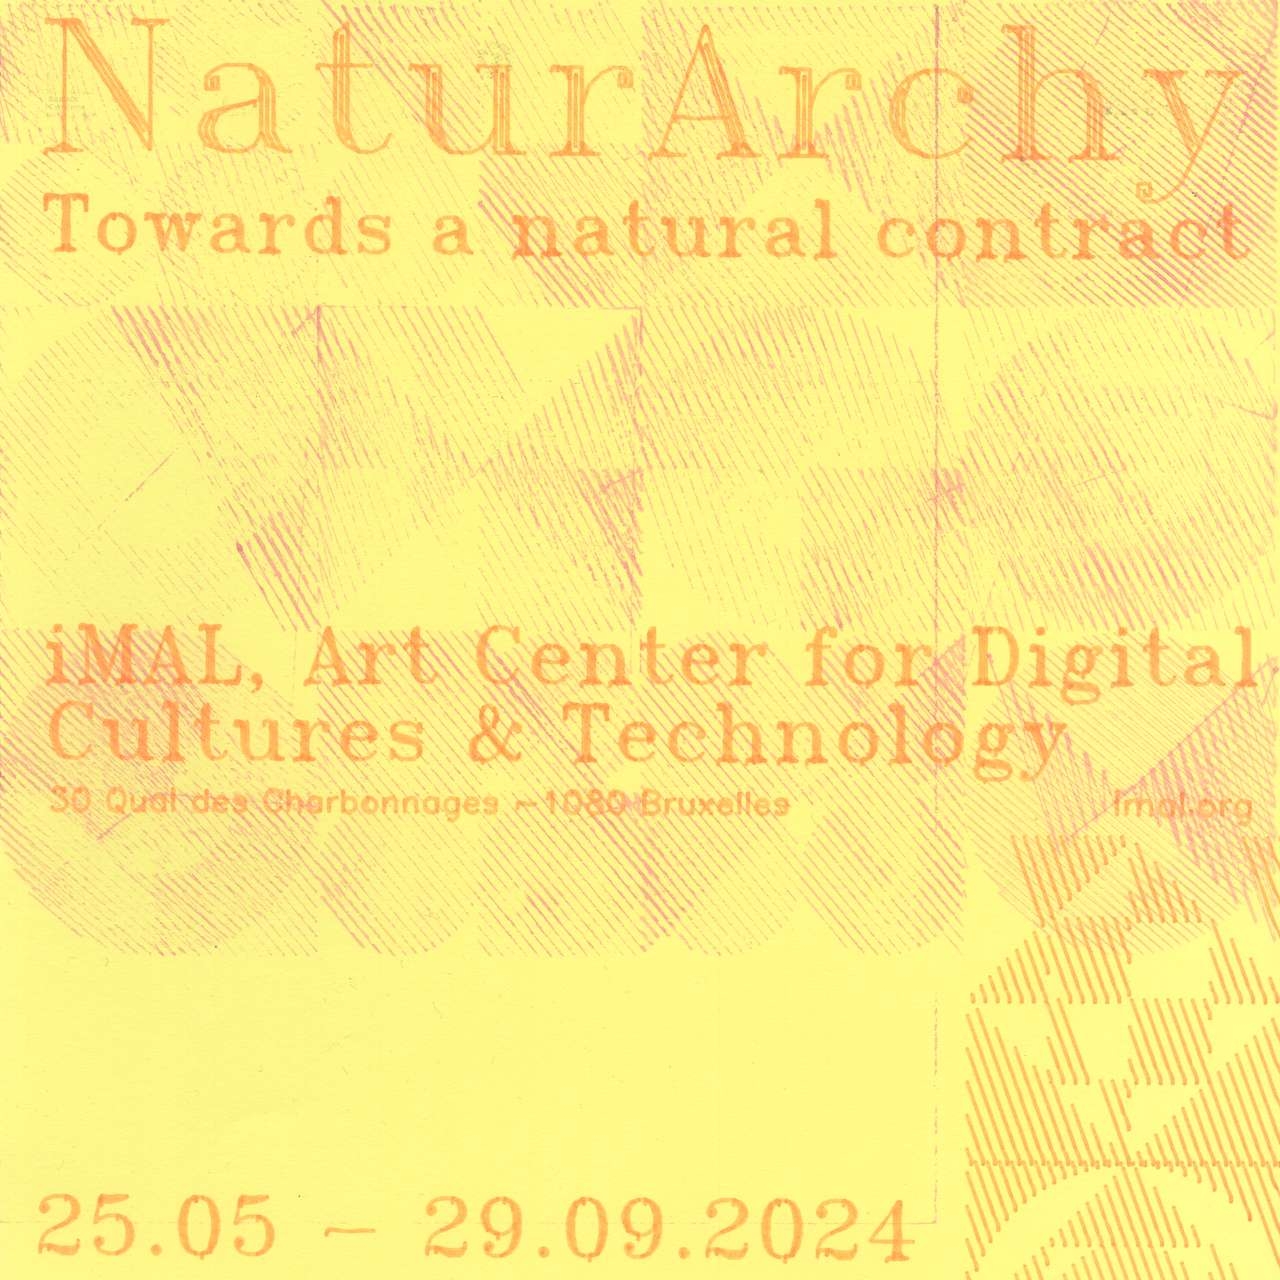 NaturArchy